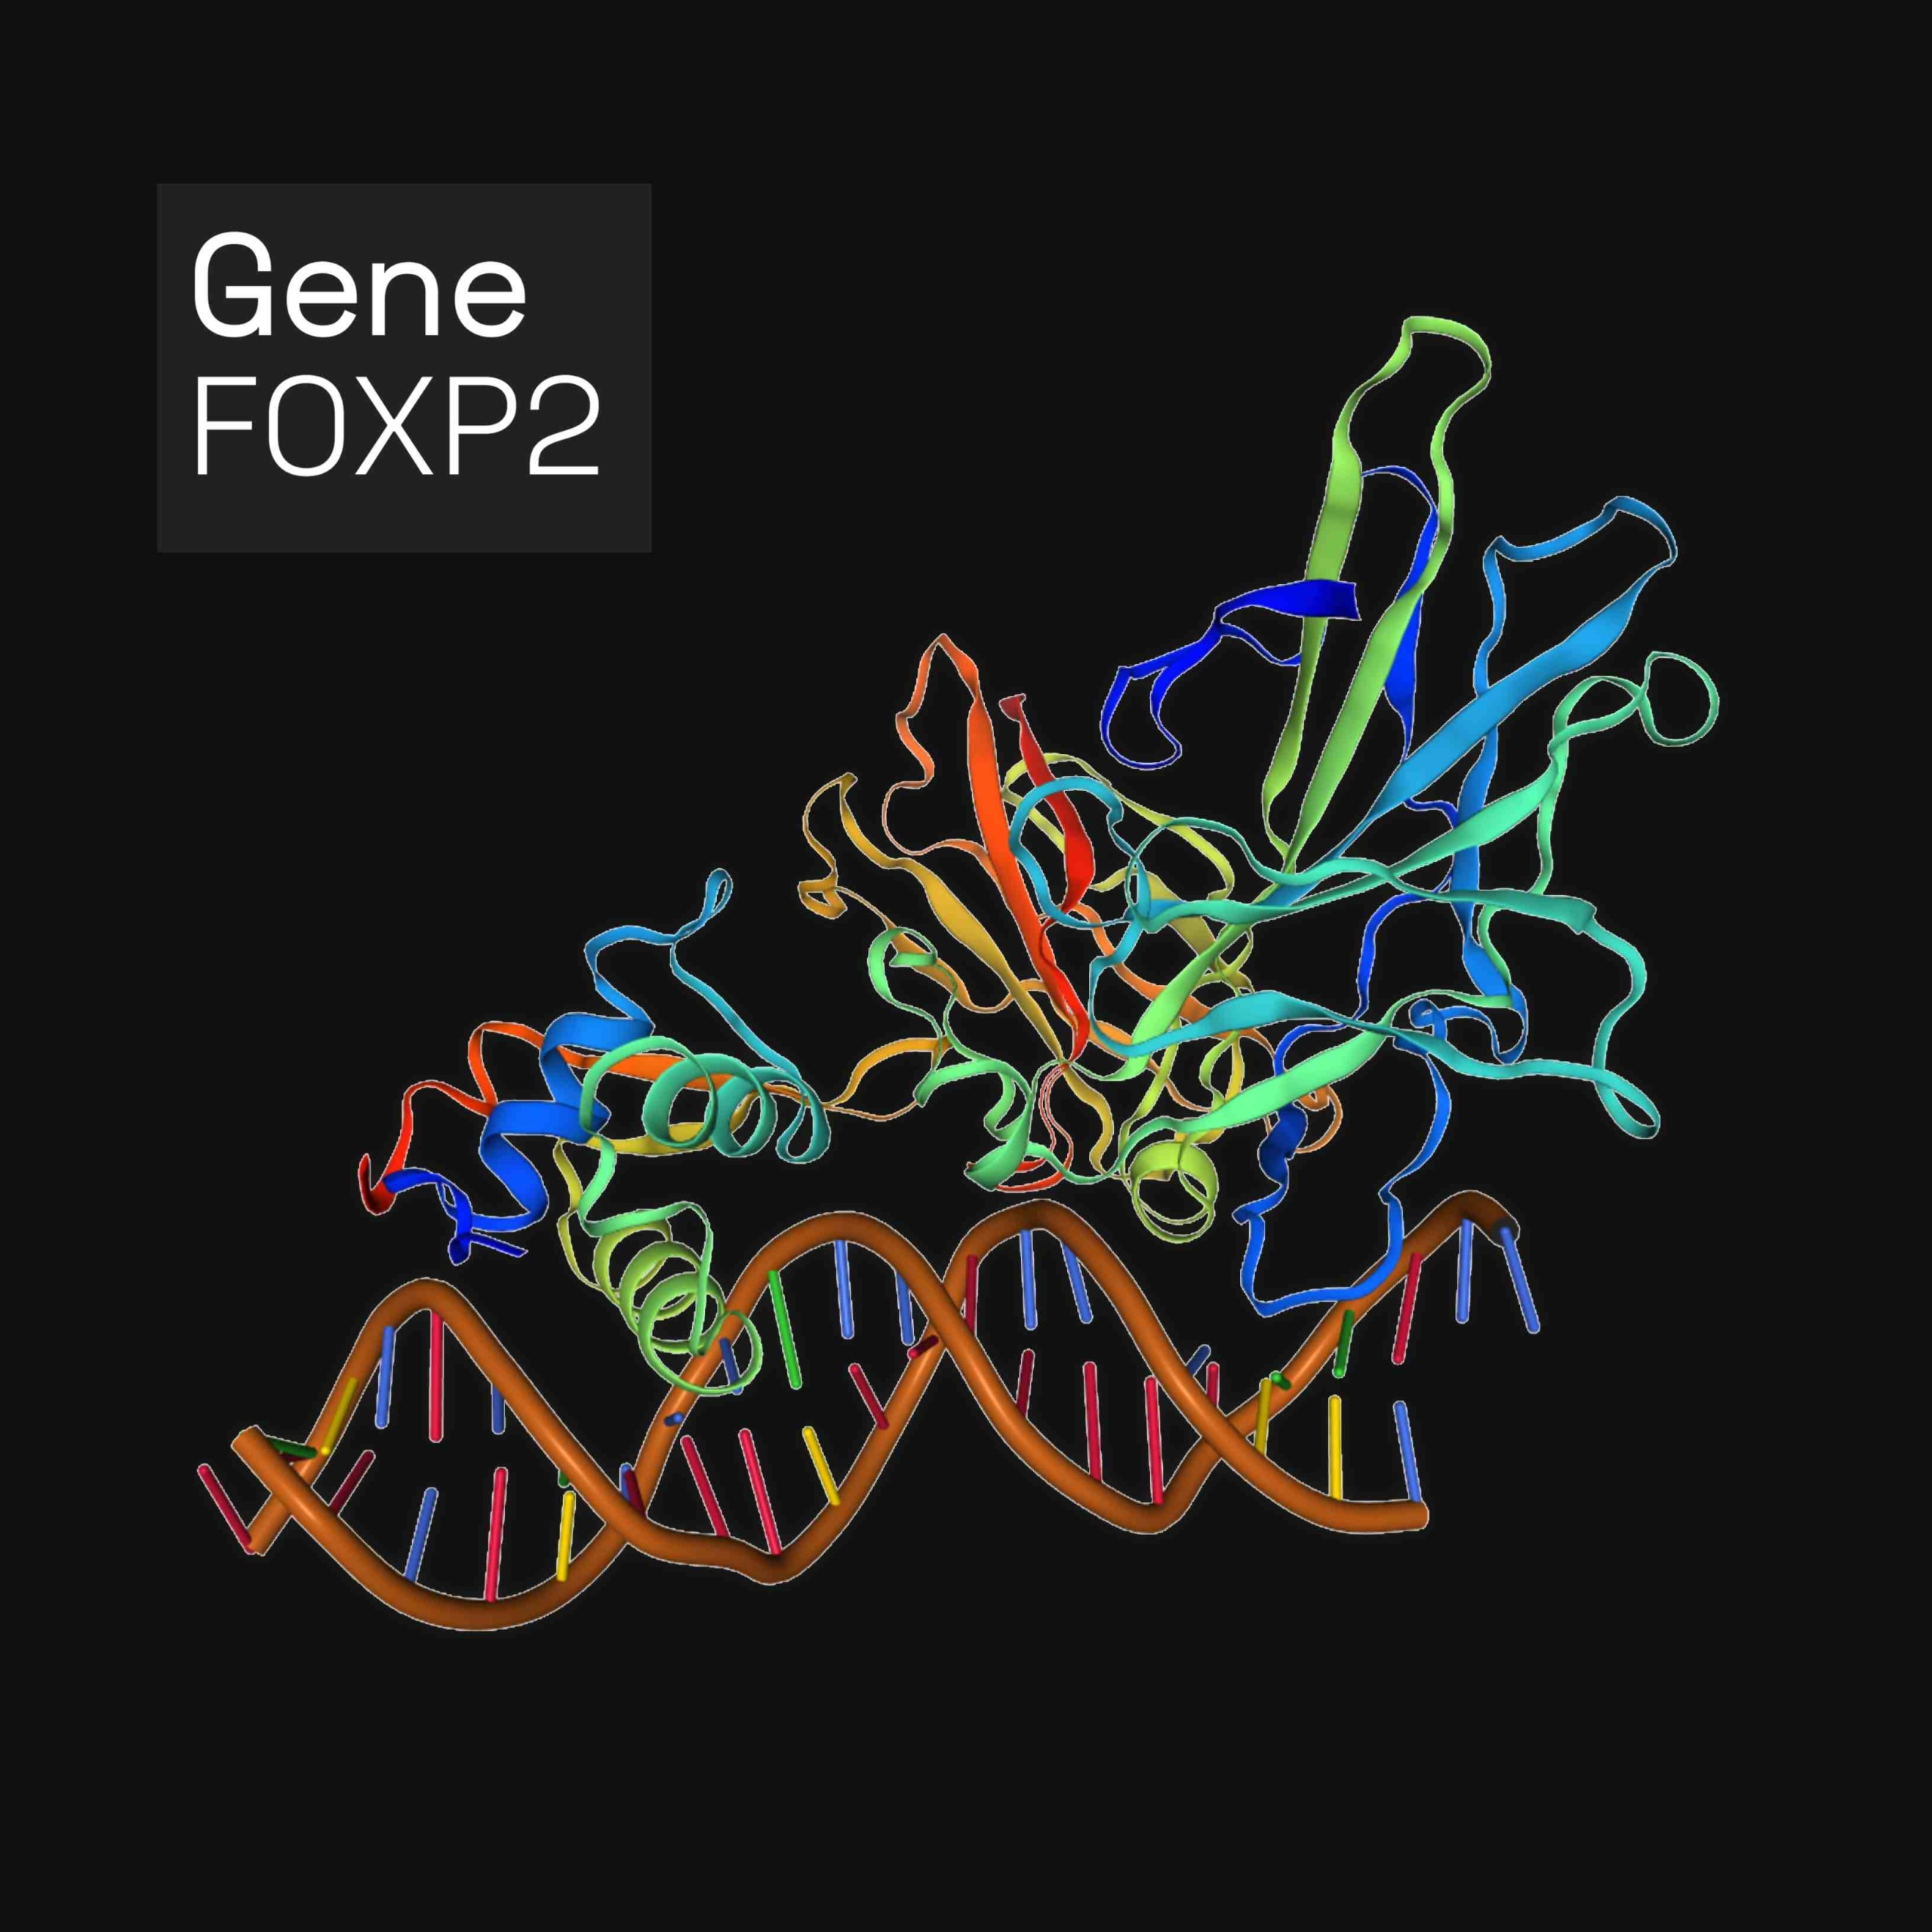 Forkhead box ပရိုတင်း P2 (FOXP2) သည် လူသားများတွင် FOXP2 ဗီဇဖြင့် ကုဒ်ဝှက်ထားသော ပရိုတင်းတစ်မျိုးဖြစ်သည်။ FOXP2 သည် DNA နှင့် ချိတ်ဆက်ခြင်းဖြင့် မျိုးရိုးဗီဇဖော်ပြမှုကို ထိန်းညှိပေးသည့် ပရိုတိန်းများပါရှိသော forkhead box မိသားစု၏ အဖွဲ့ဝင်ဖြစ်သည်။ ဦးနှောက်၊ နှလုံး၊ အဆုတ်နှင့် အစာခြေစနစ်တွင် ဖော်ပြသည်။